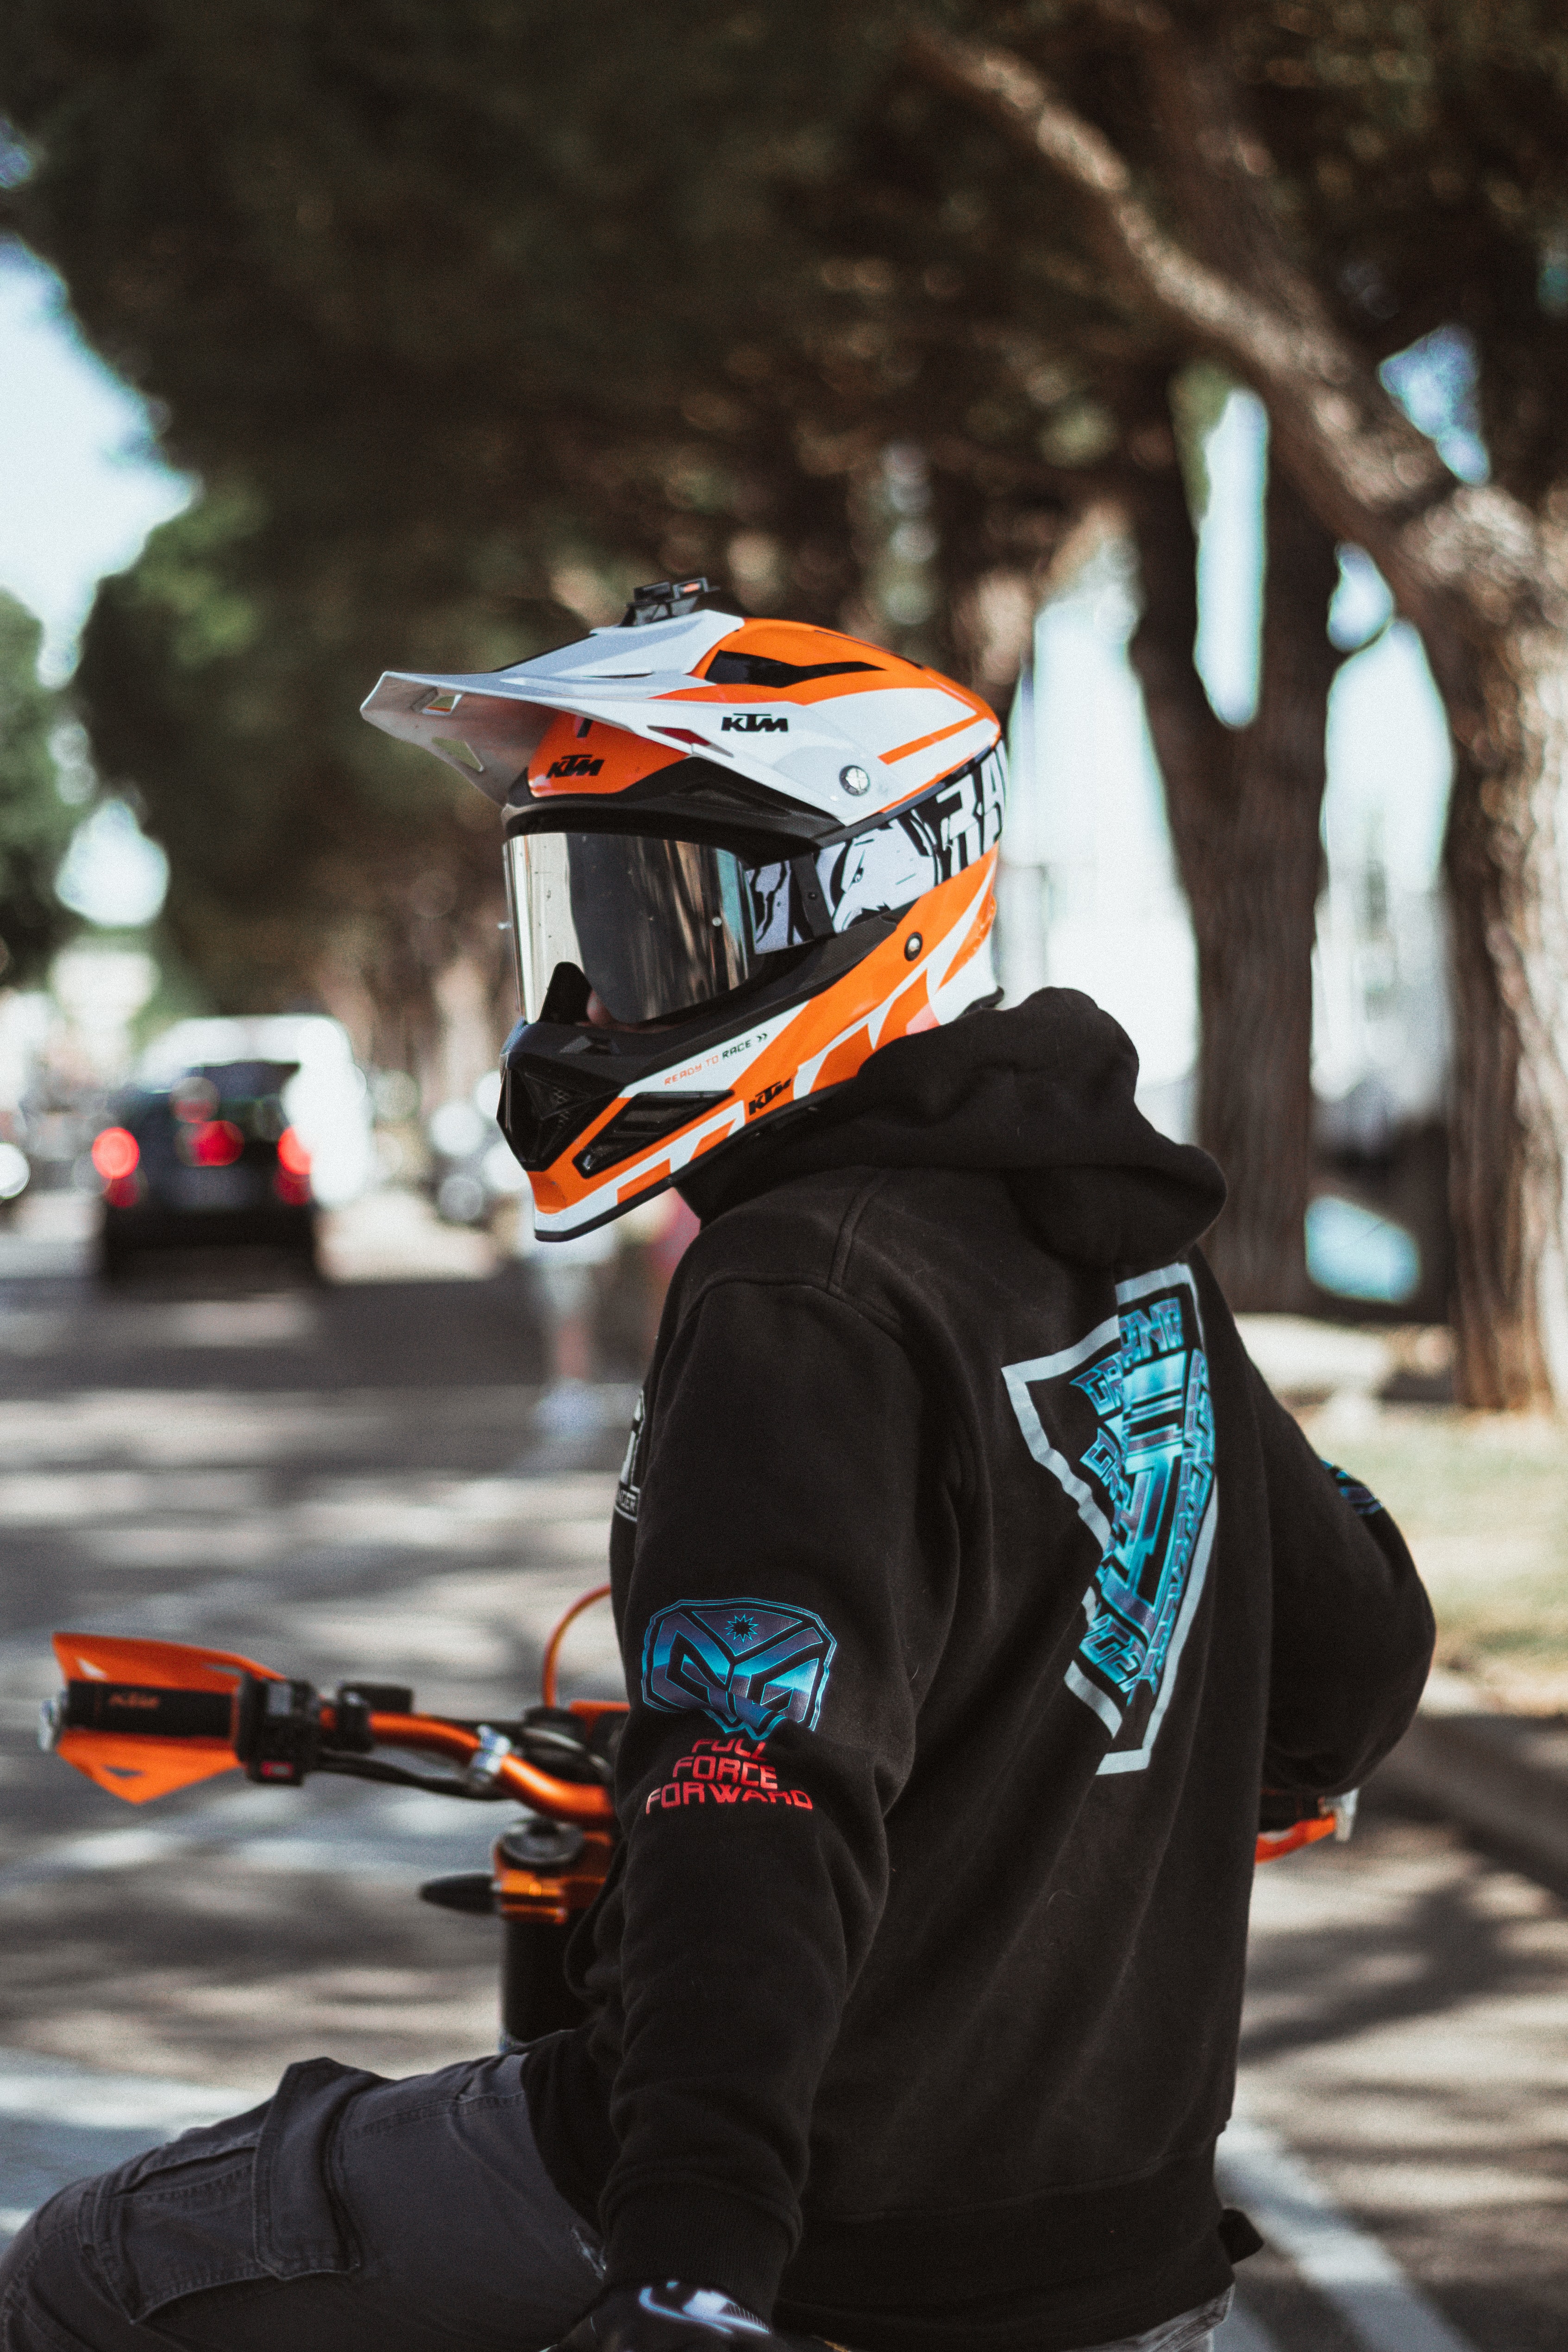 helmet, motorcyclist, minimalism, hoodies, motorcycle, hoodie, equipment, outfit